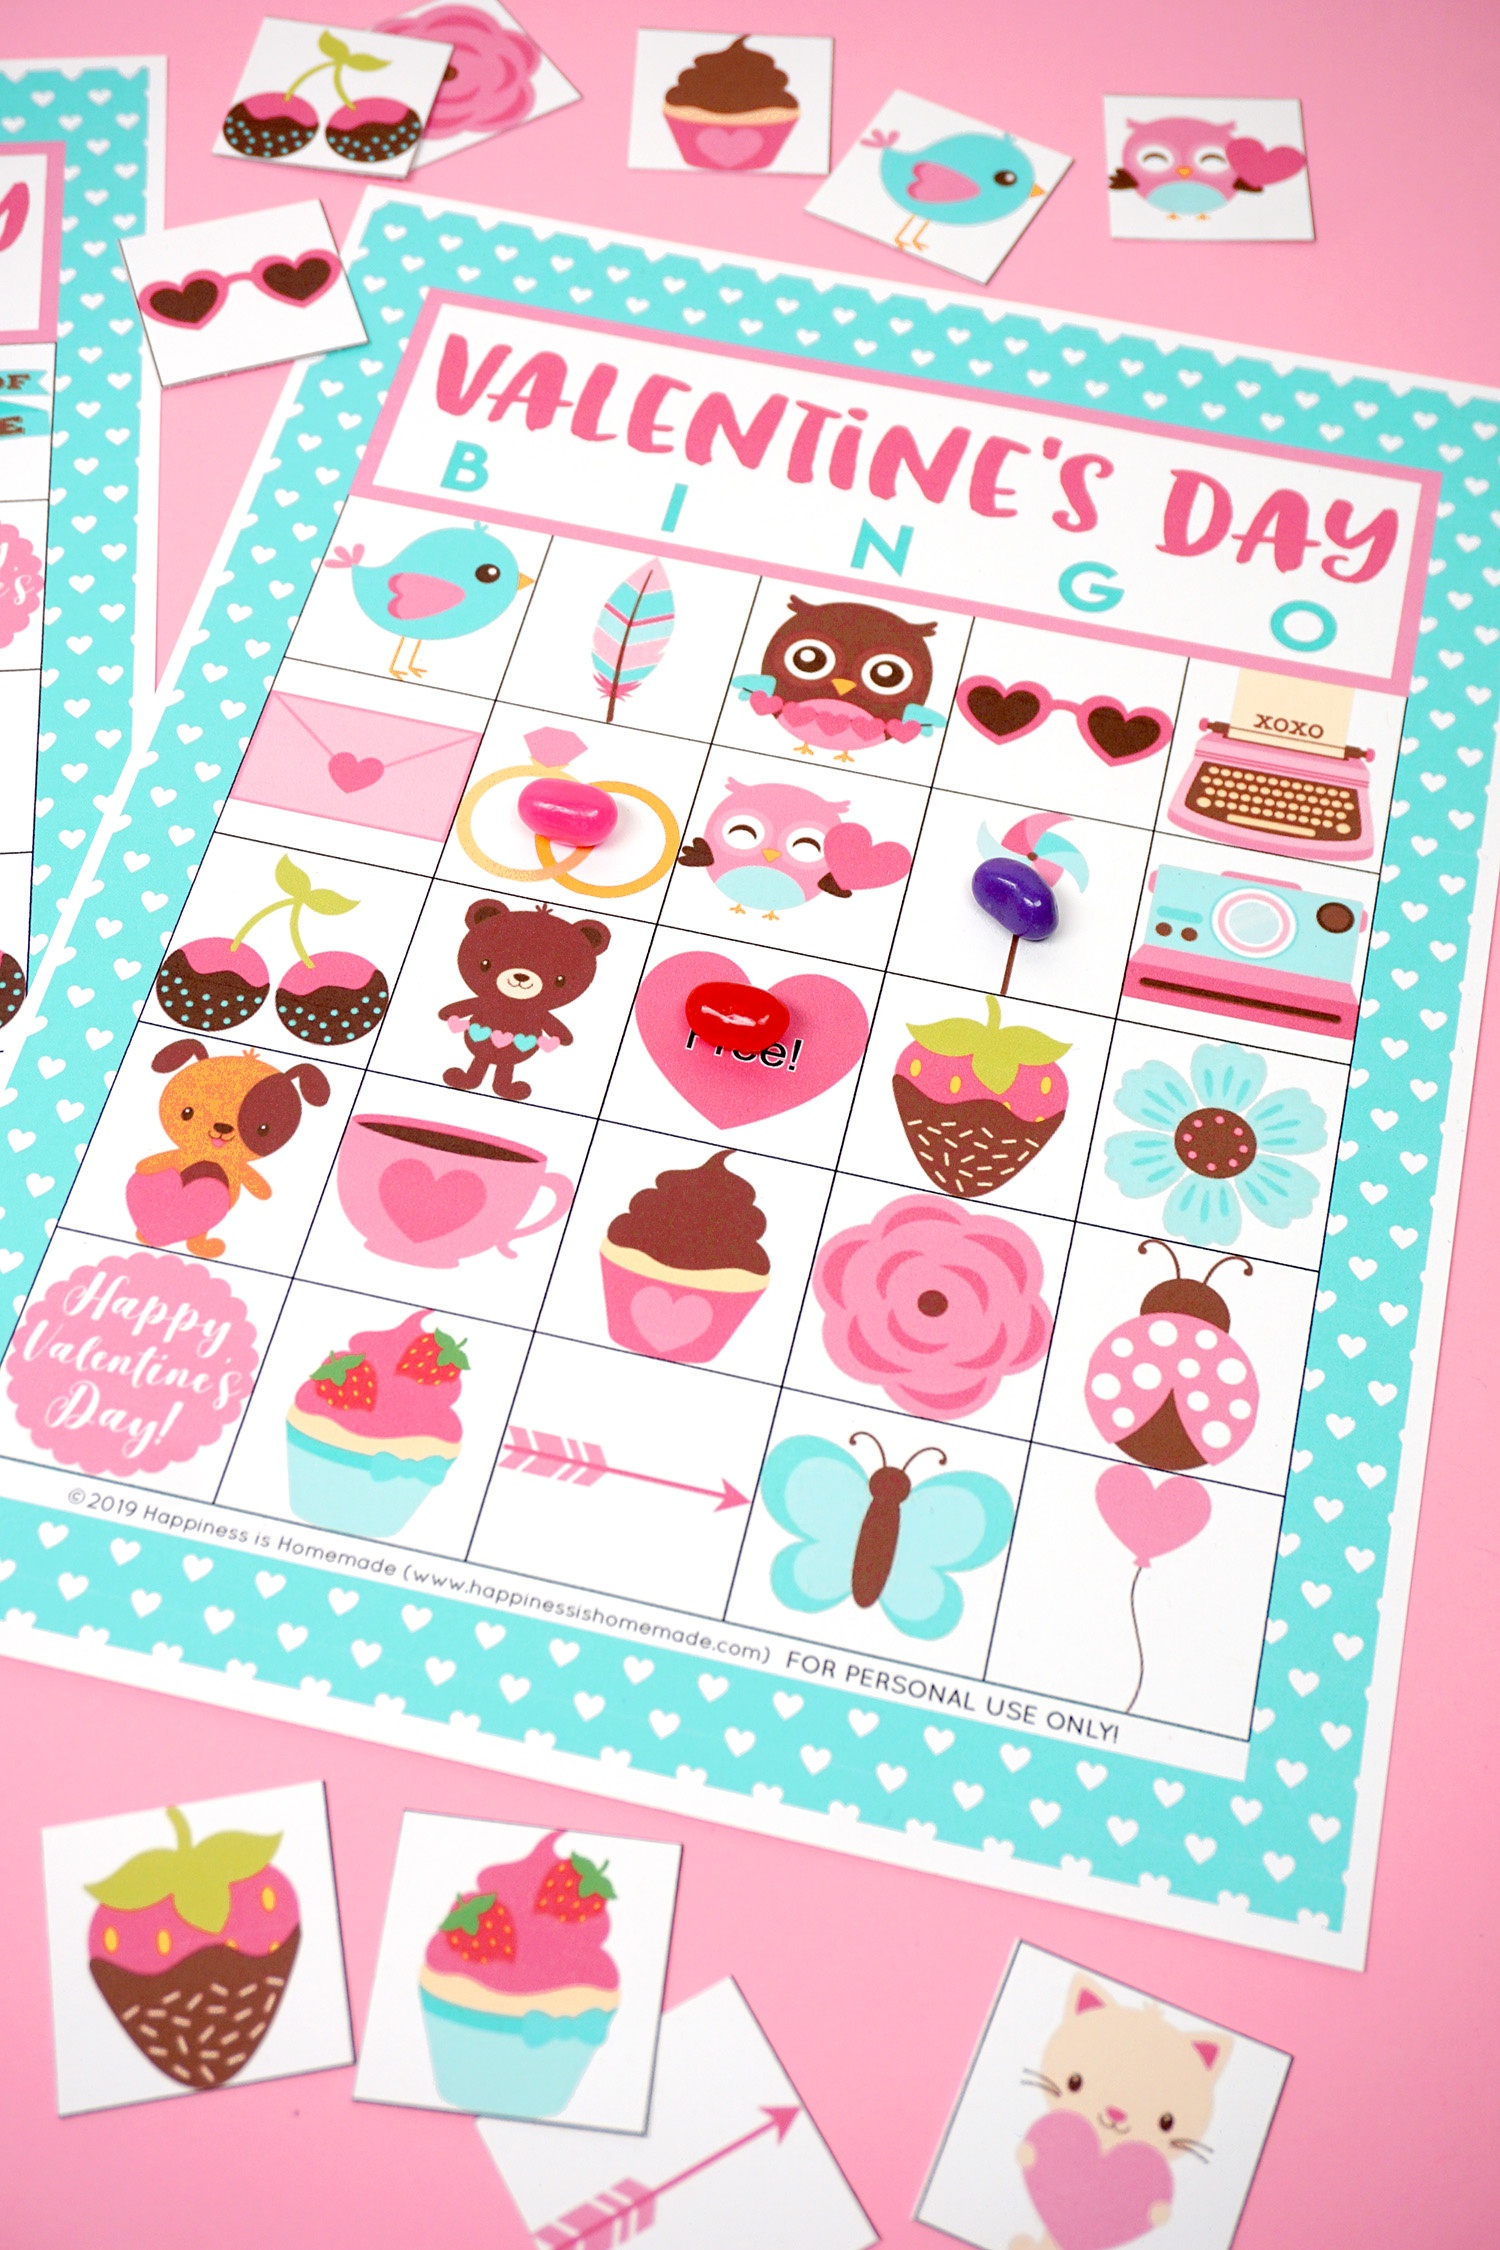 Free Printable Valentine Bingo - Happiness Is Homemade - Valentine Bingo Free Printable